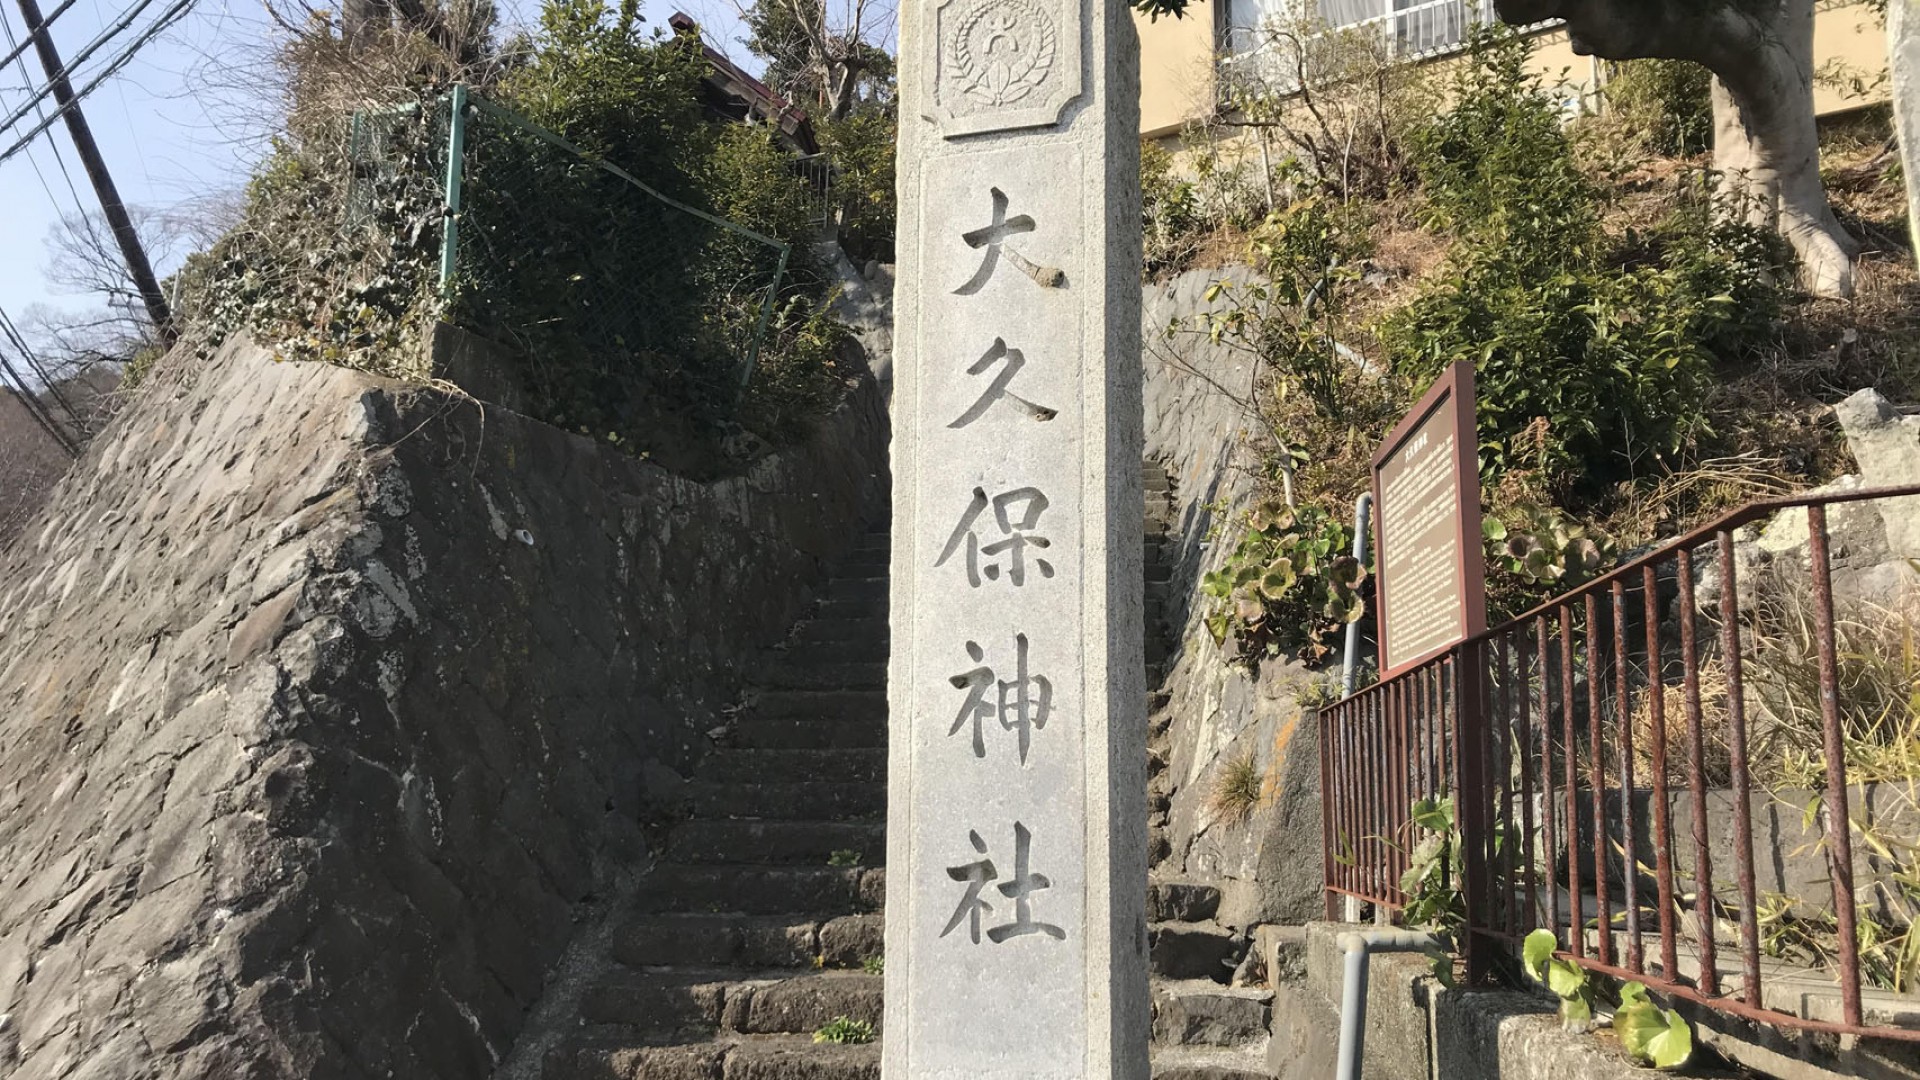 Santuario de Okubo